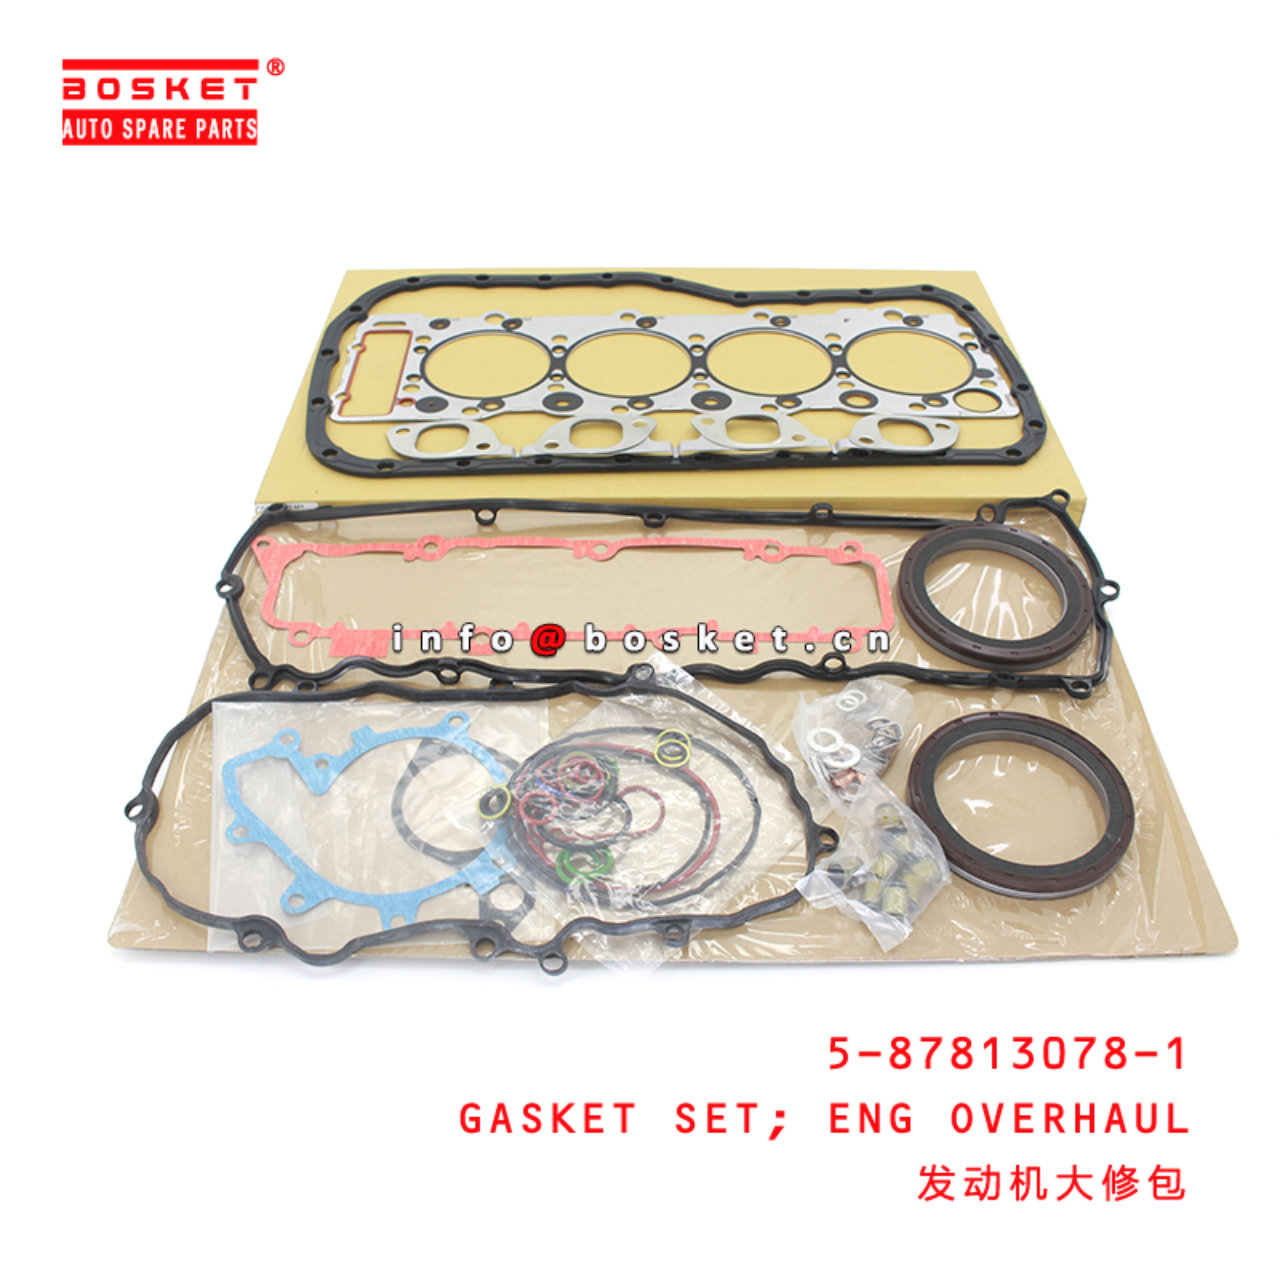 5-87813078-1 Engine Overhaul Gasket Set Suitable for ISUZU  4HE1-N 5878130781